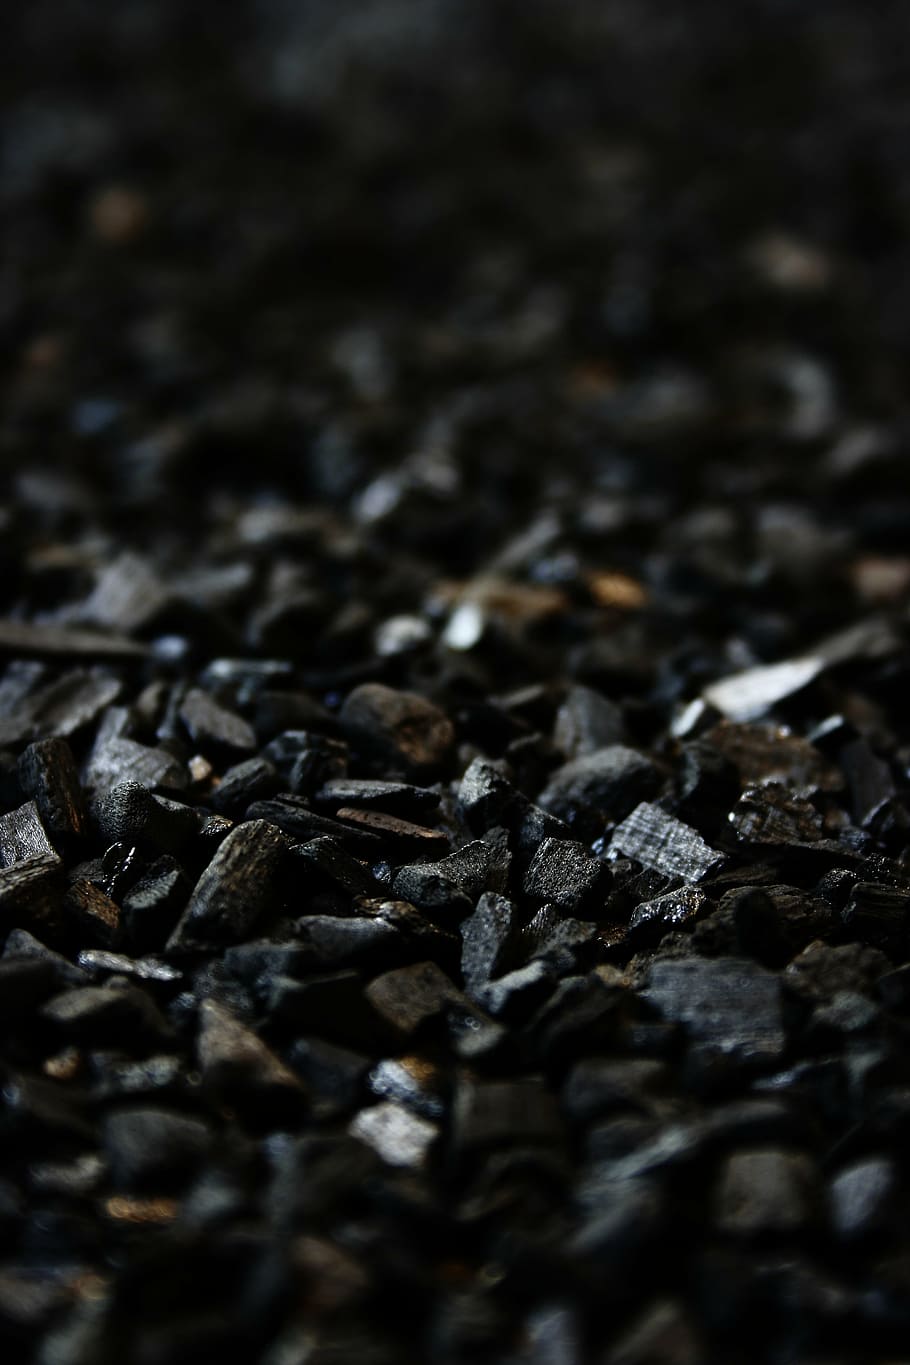 black stones close-up photo, carbon, charcoal, grill briquettes